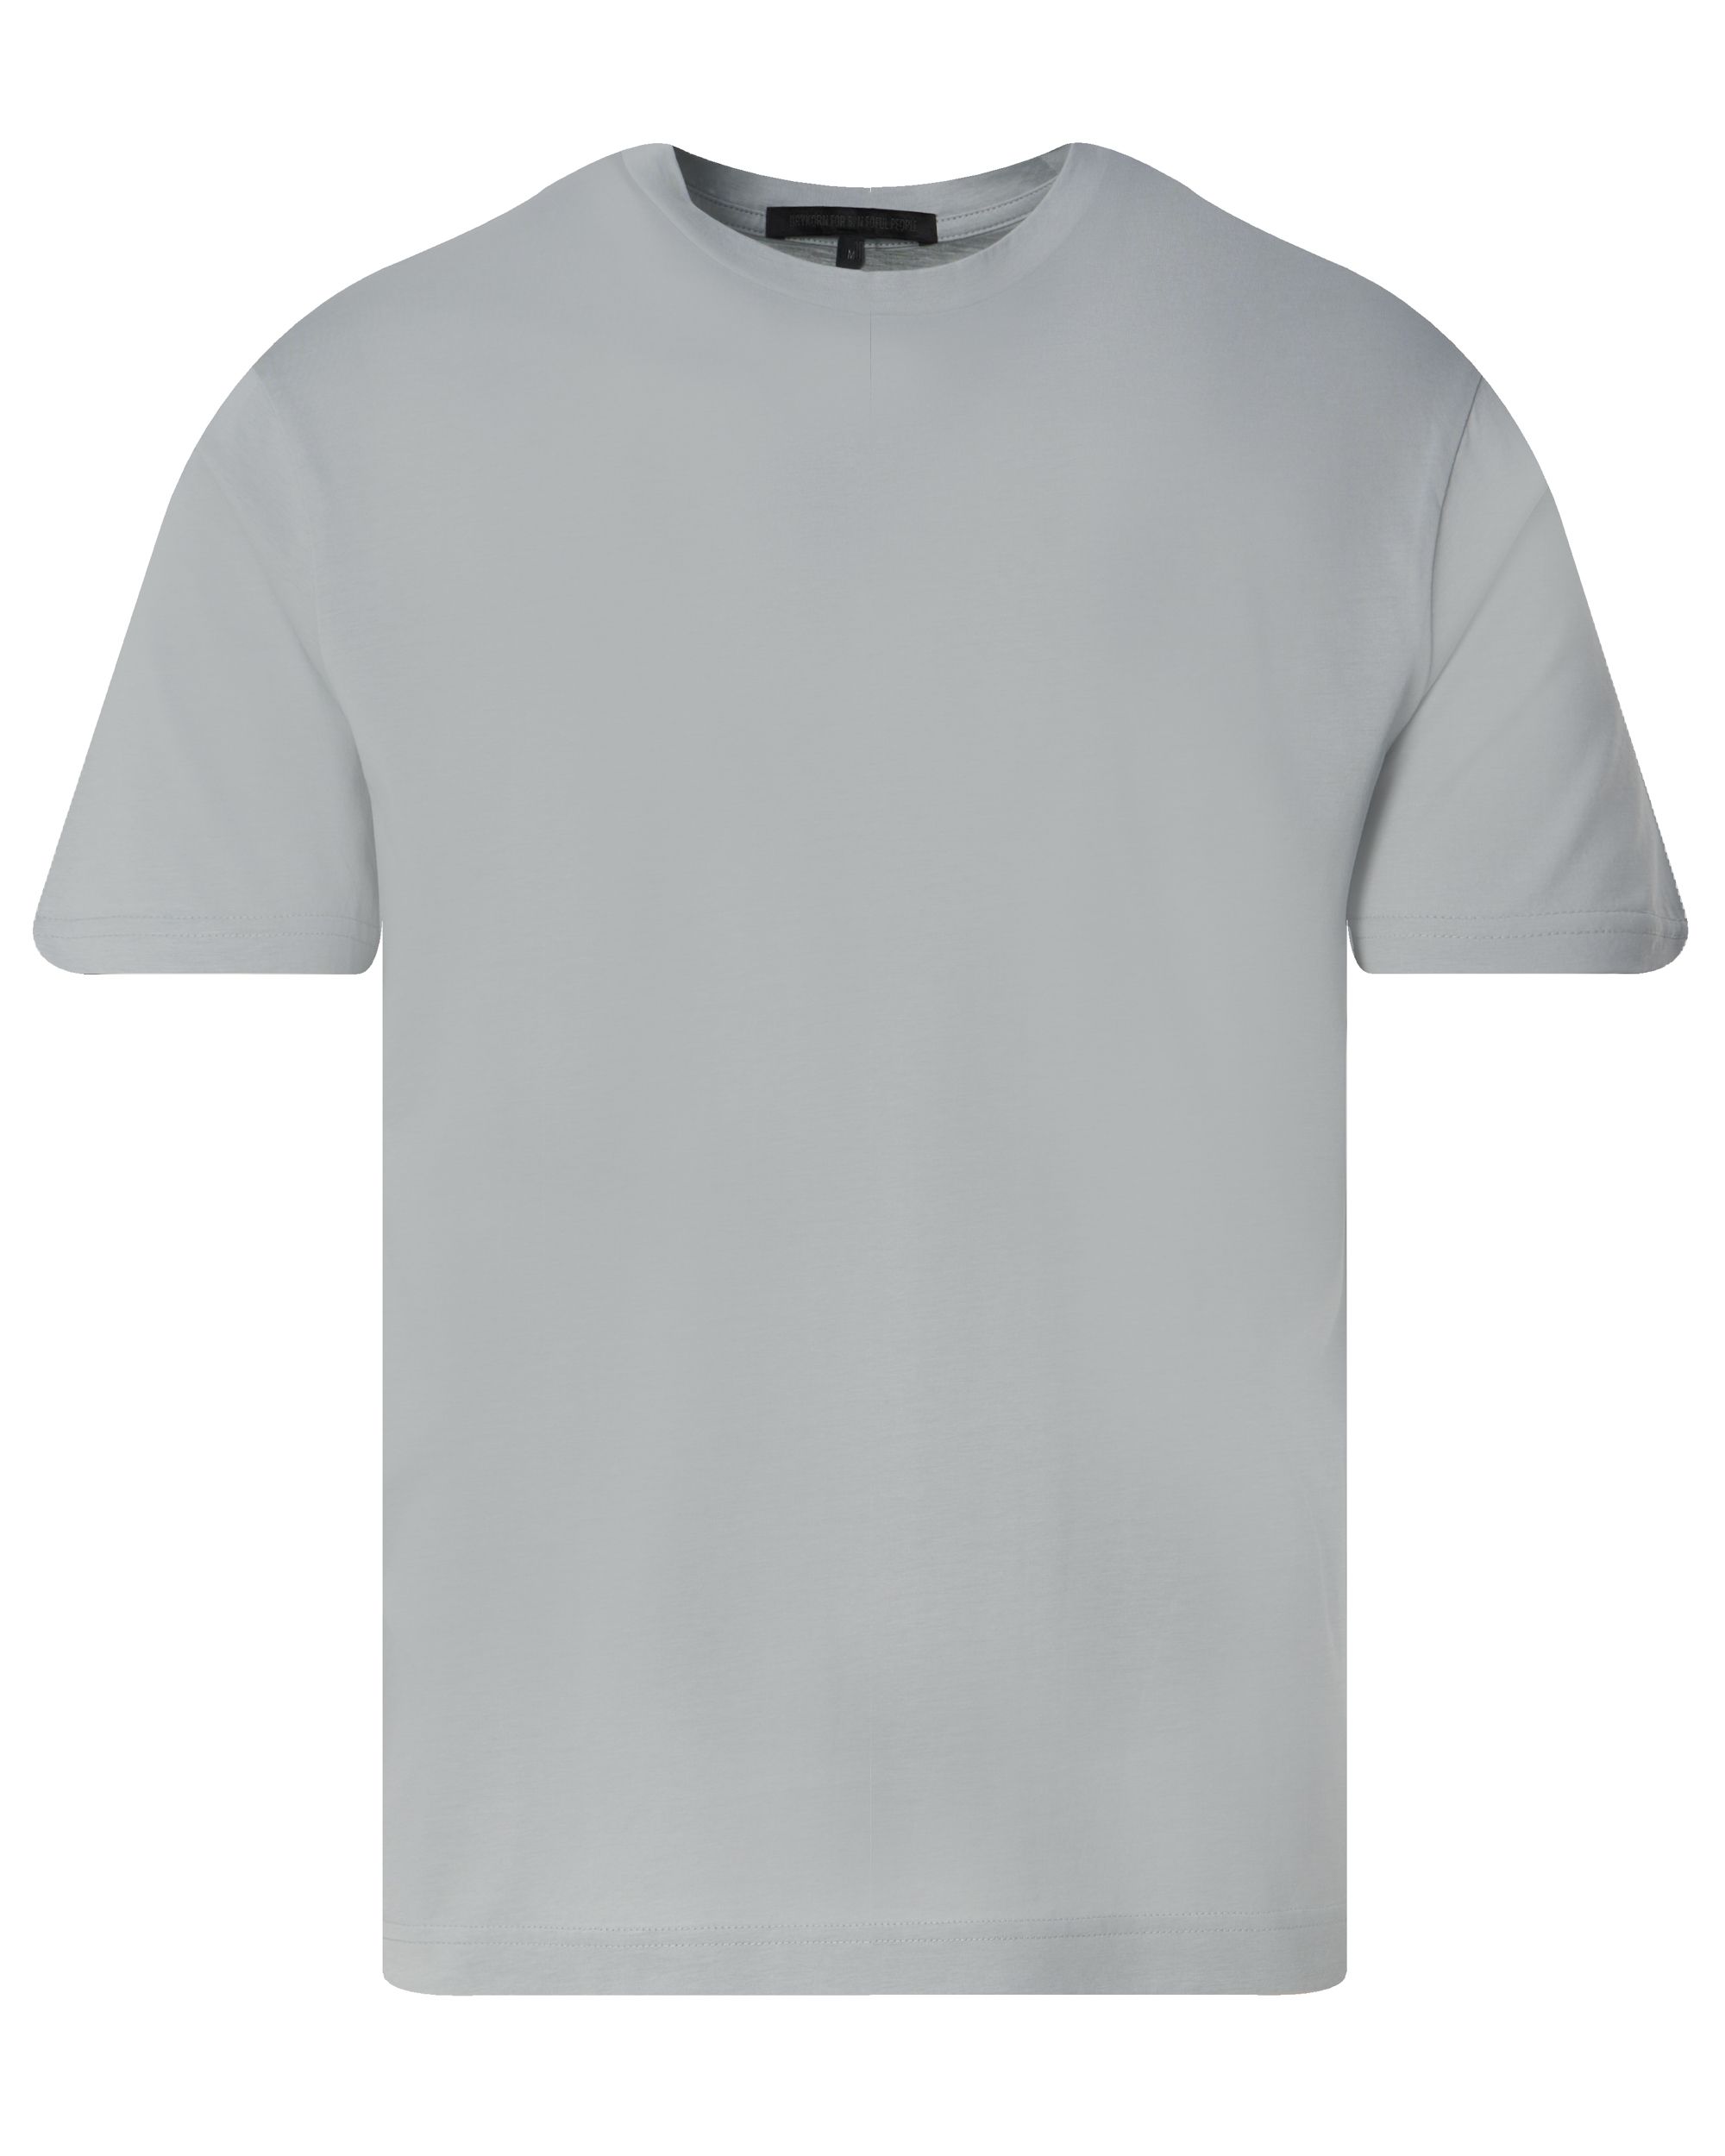 Drykorn Gilberd T-shirt KM Licht grijs 093327-002-L